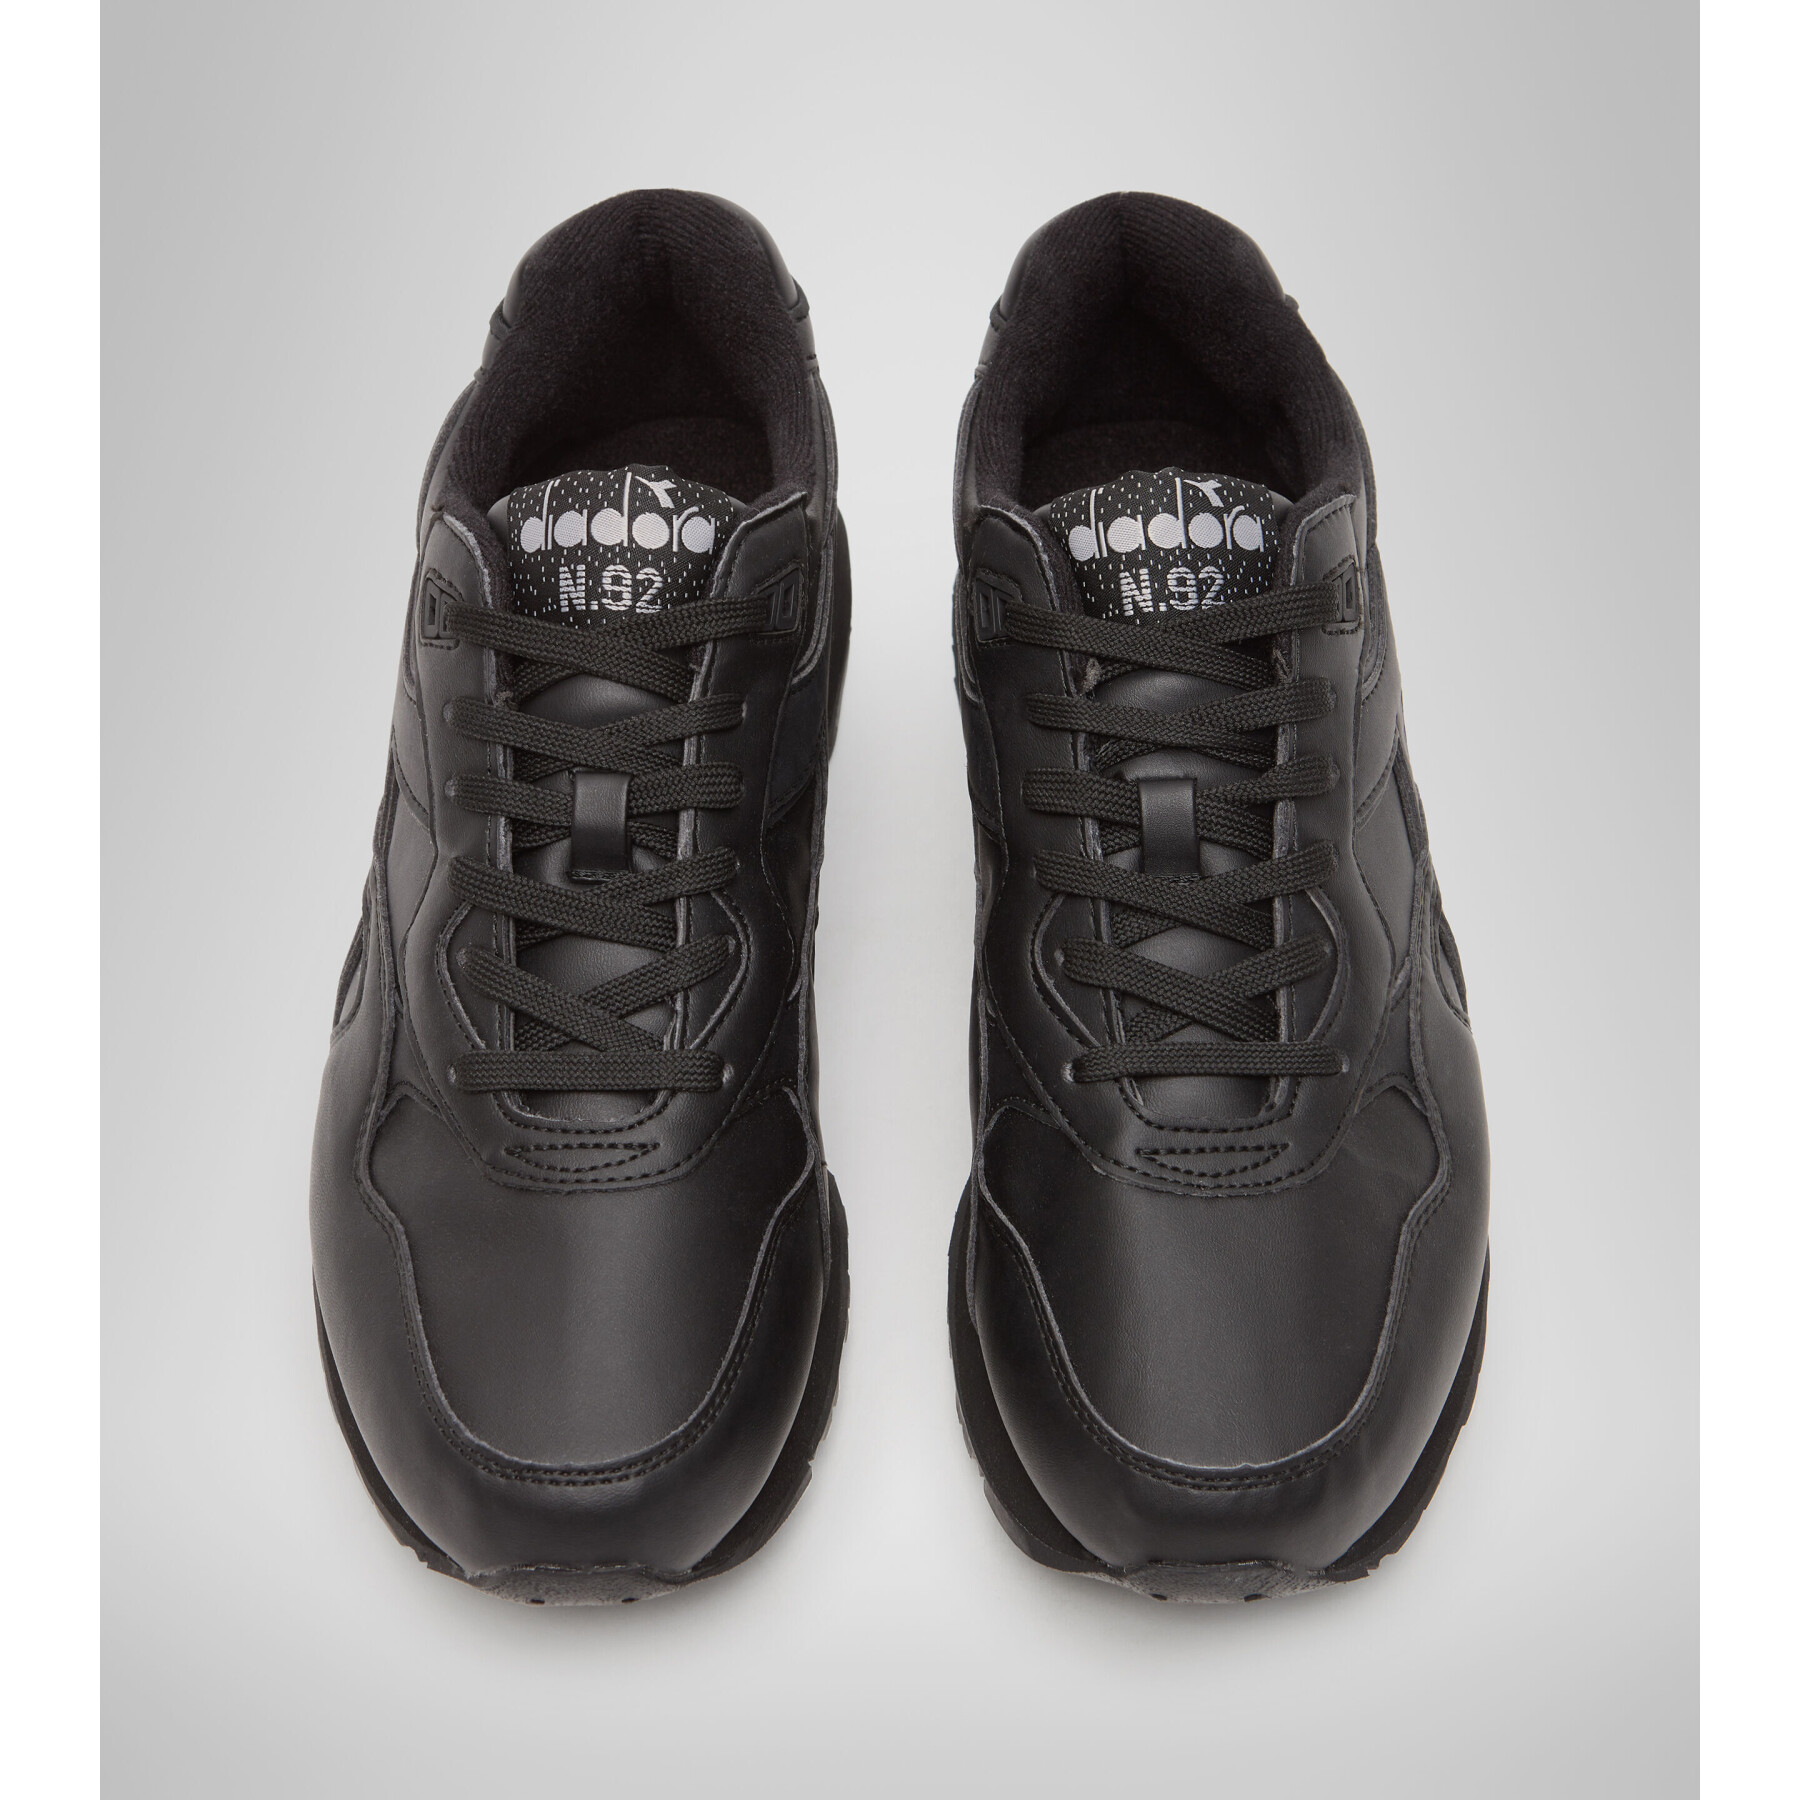 Sneakers Diadora n.93